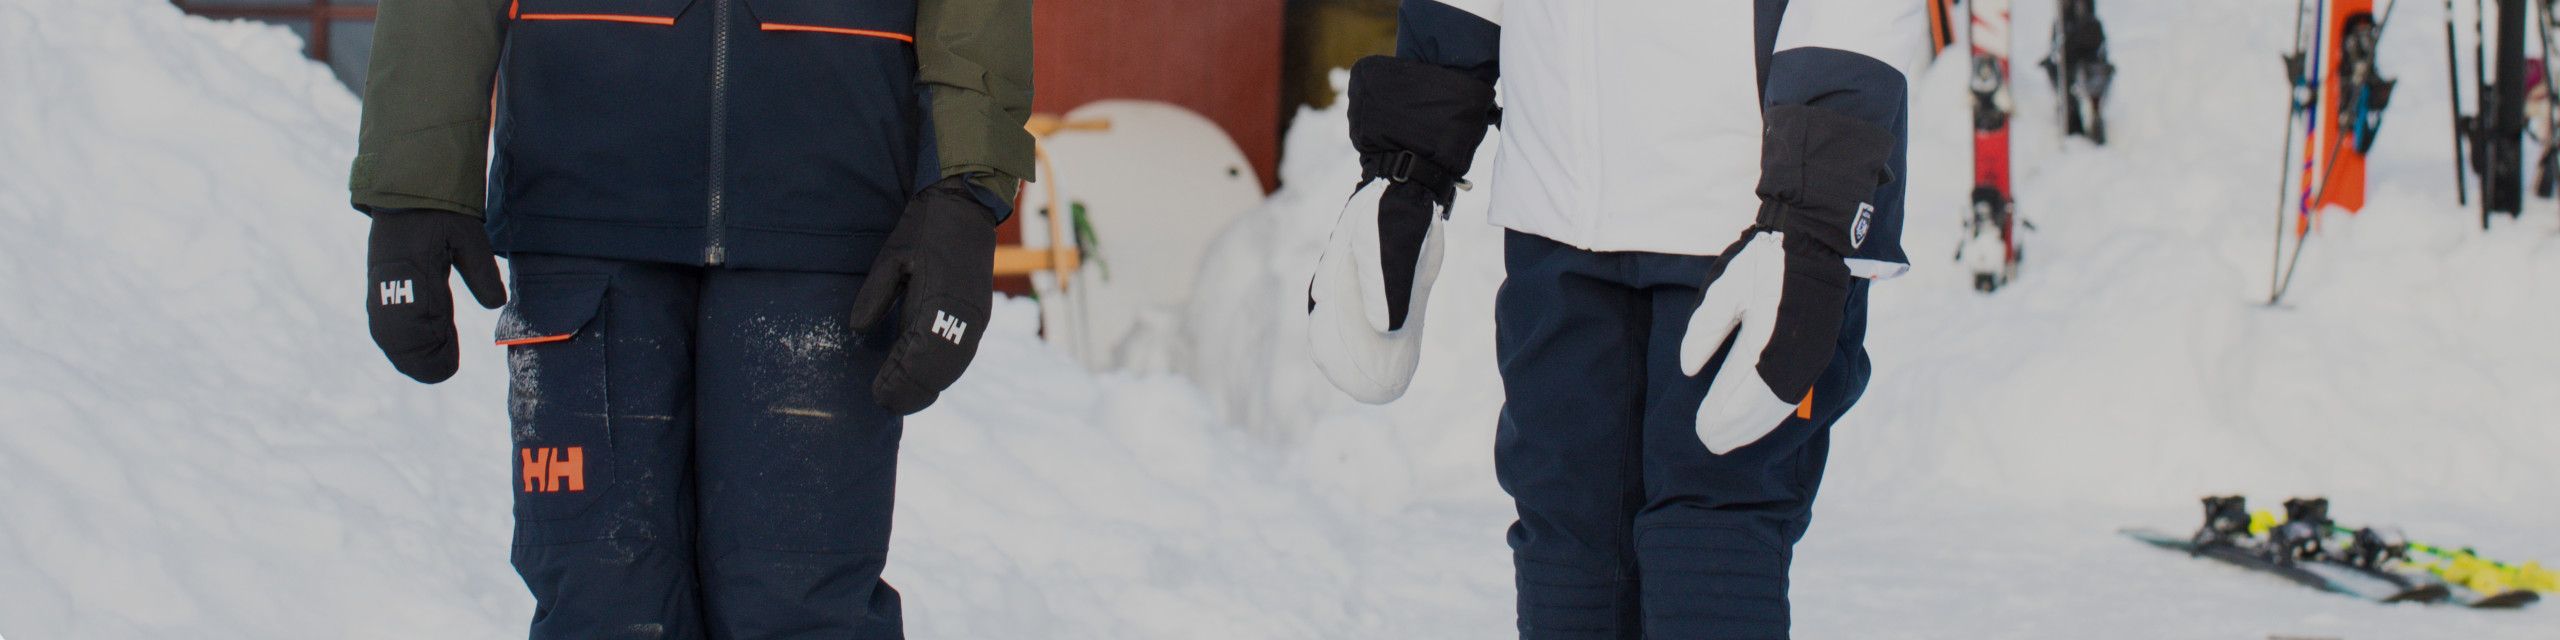 Gants de Ski à Manches sulfpour Enfant Garçon et Fille, Mitaines